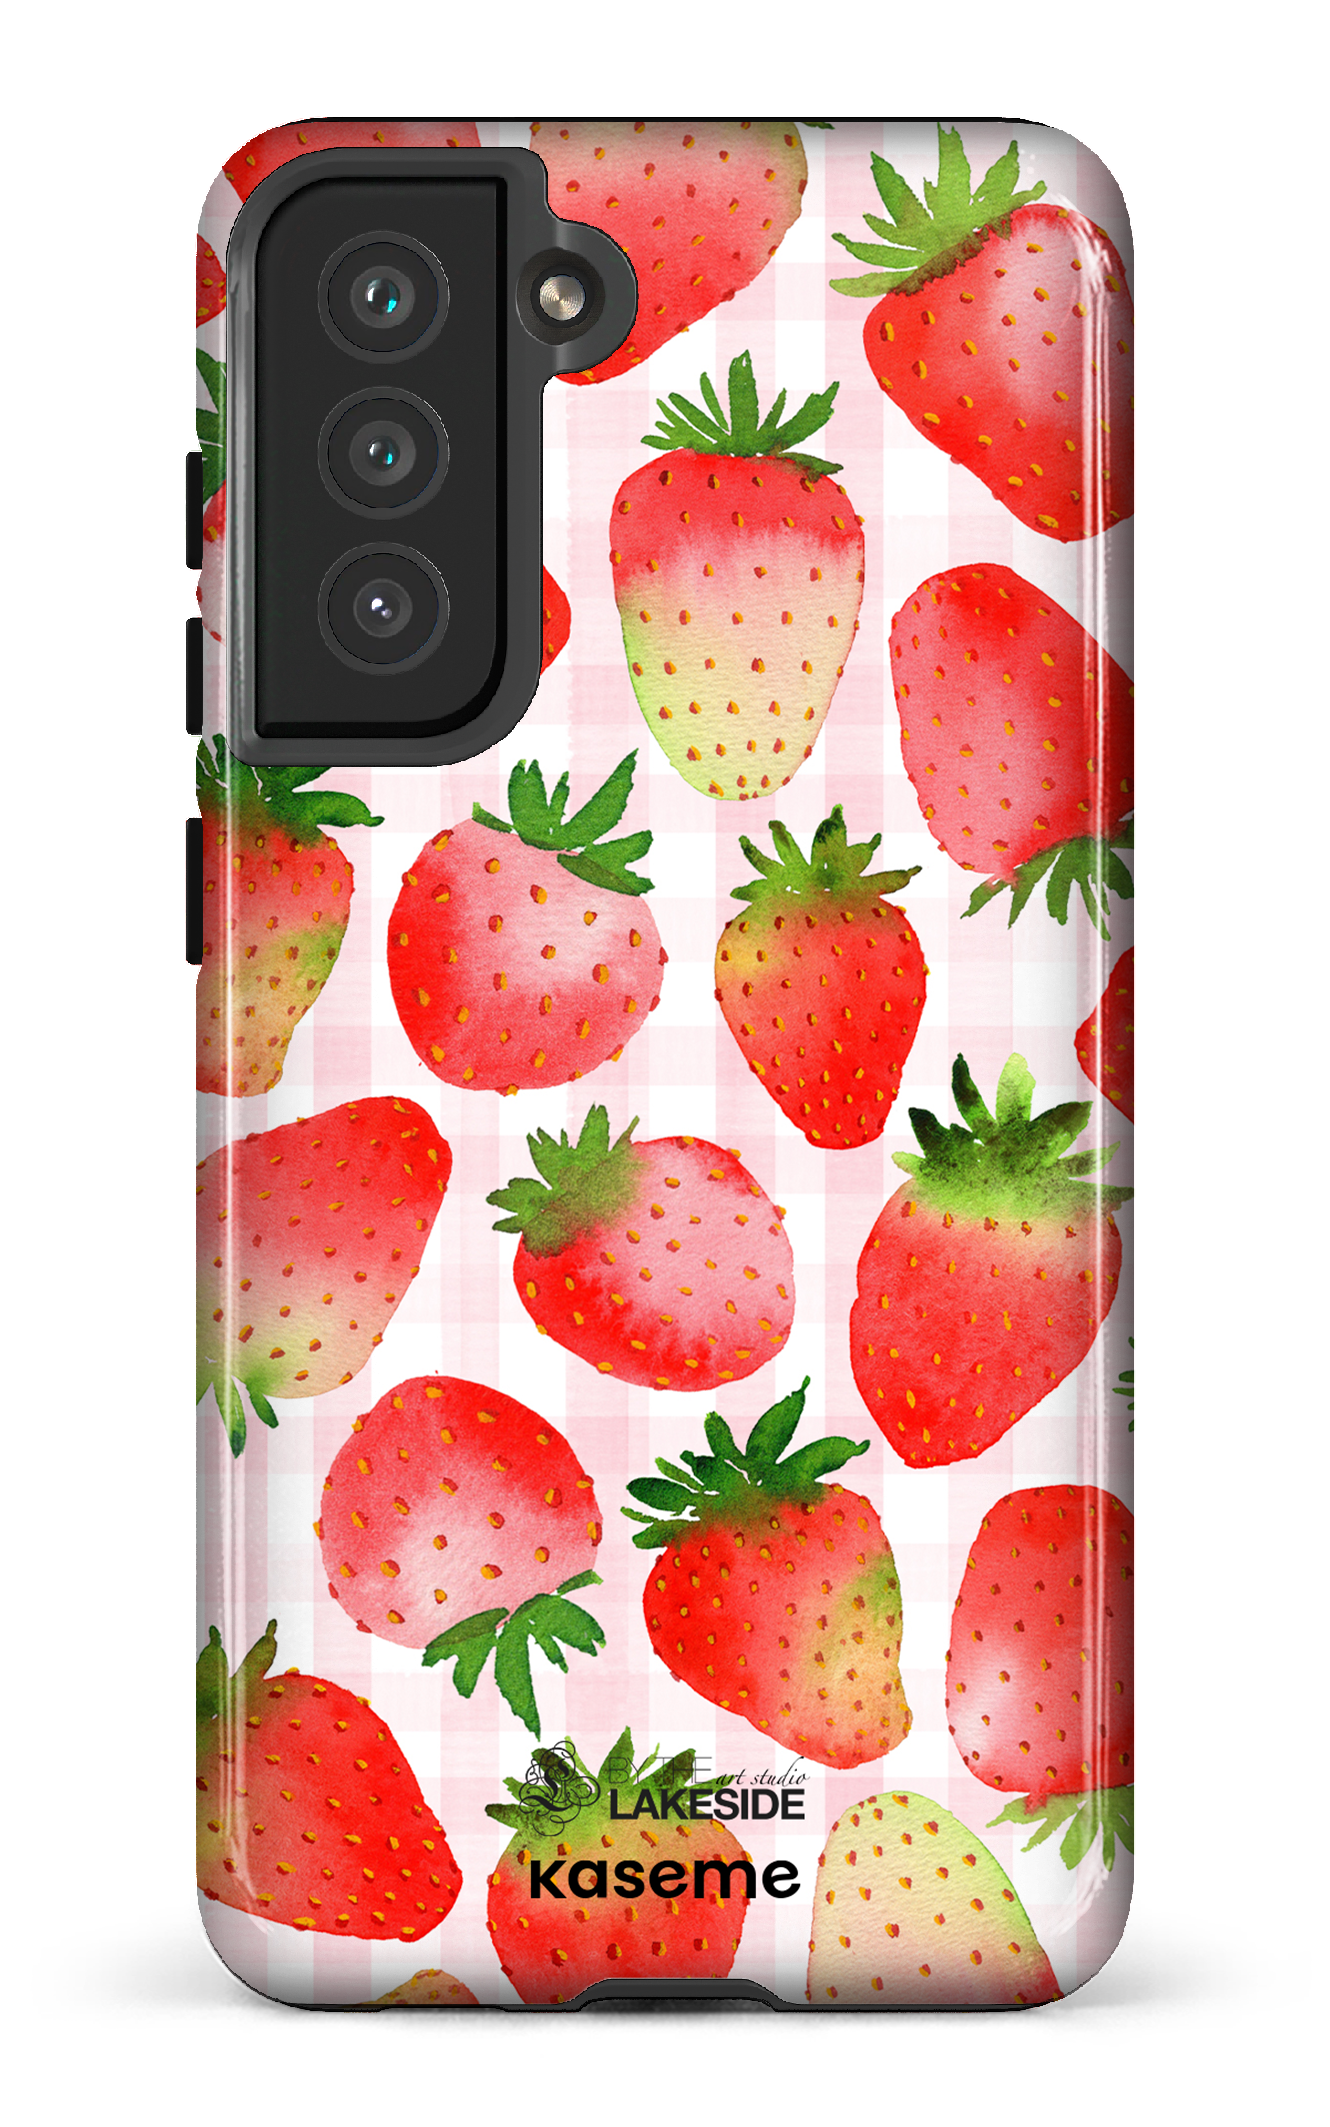 Strawberry Fields by Pooja Umrani - Galaxy S21 FE